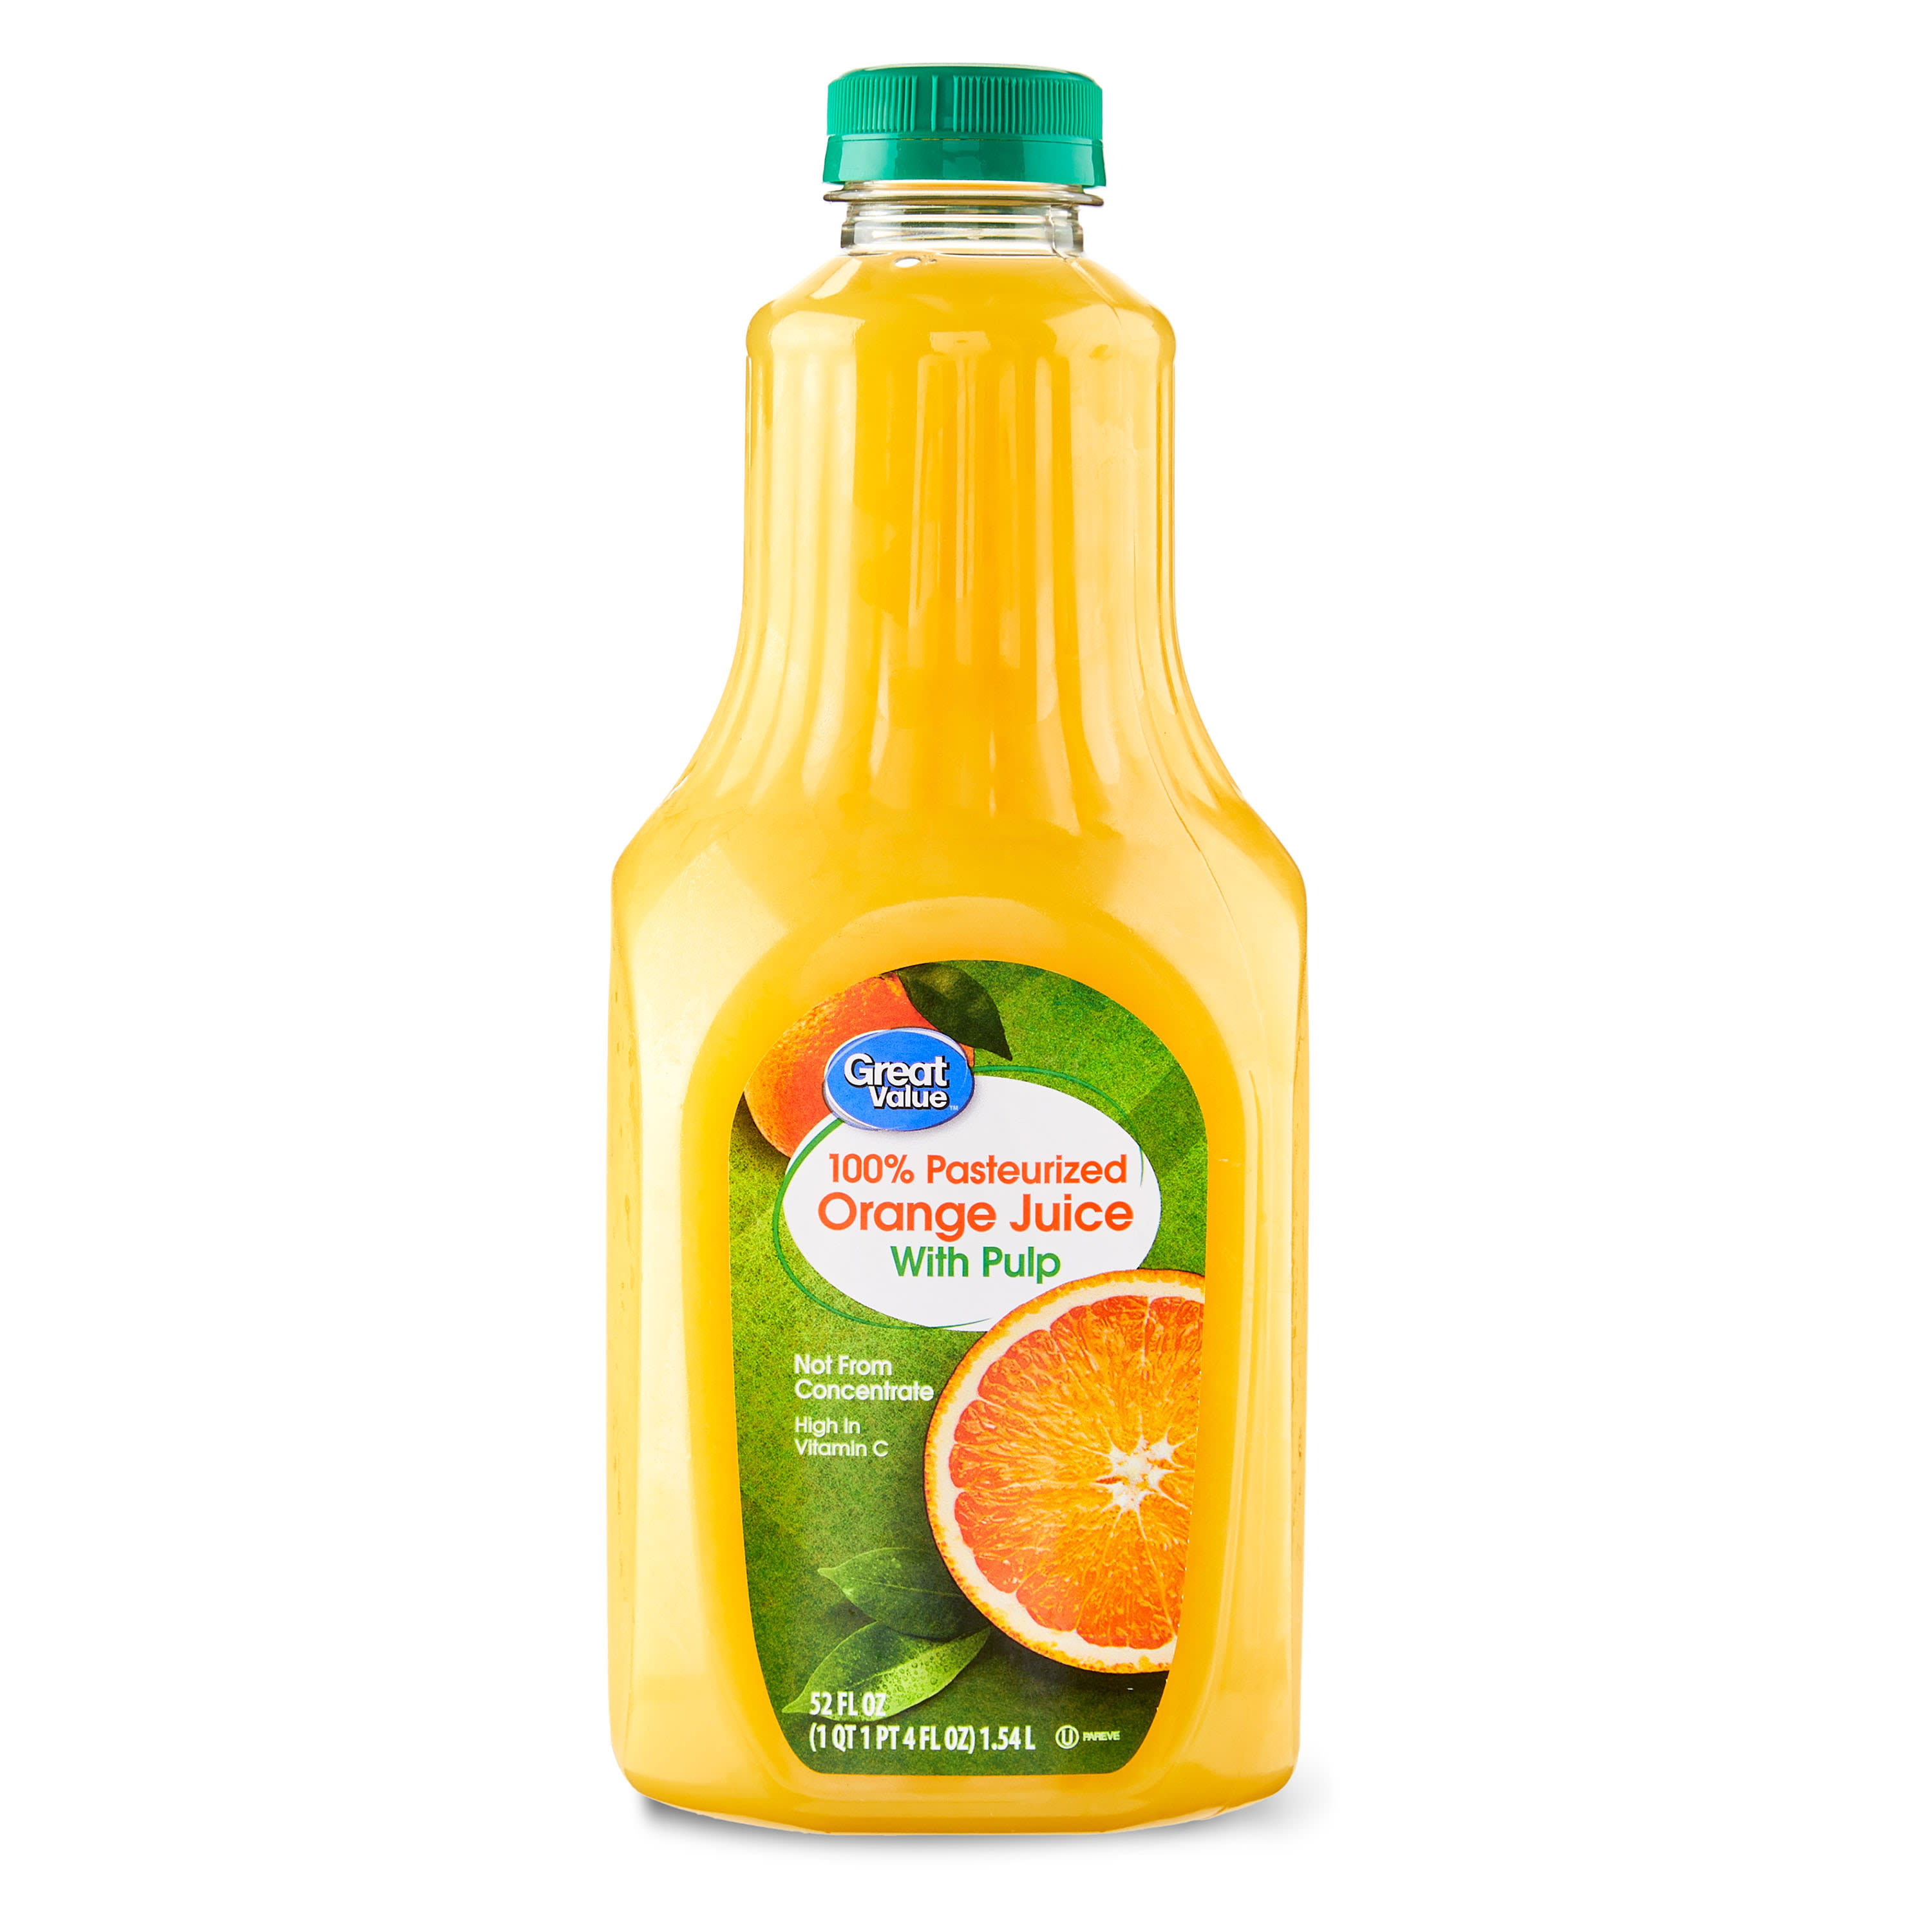 Minute Maid Orange Juice Drinks, 6 ct / 10 fl oz - Kroger